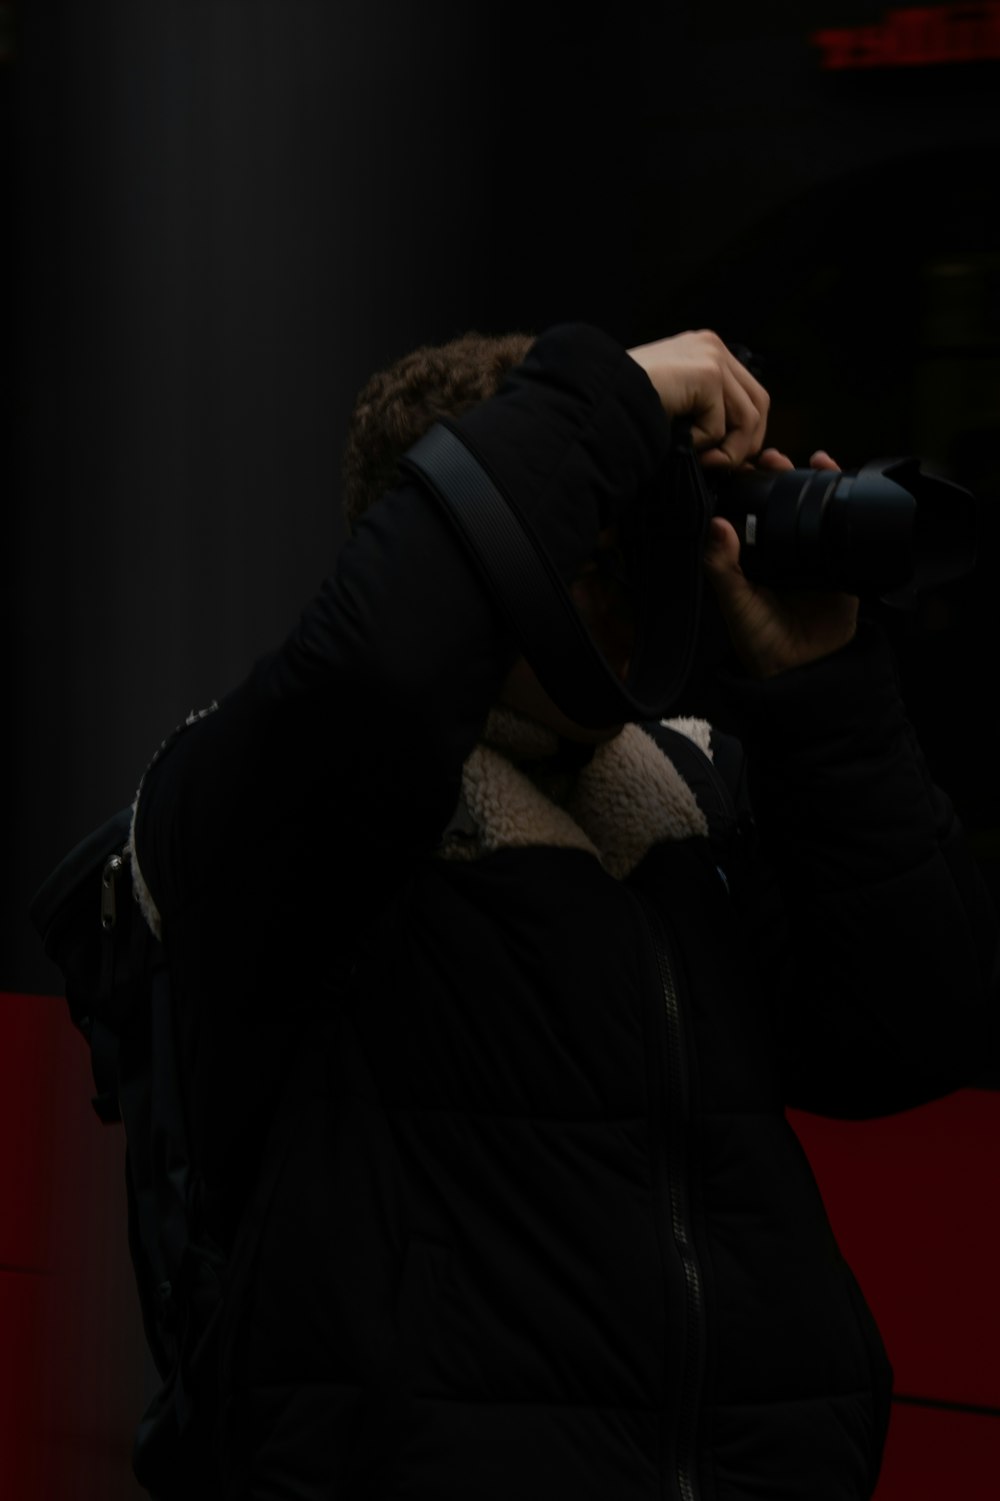 homem na jaqueta preta segurando a câmera dslr preta